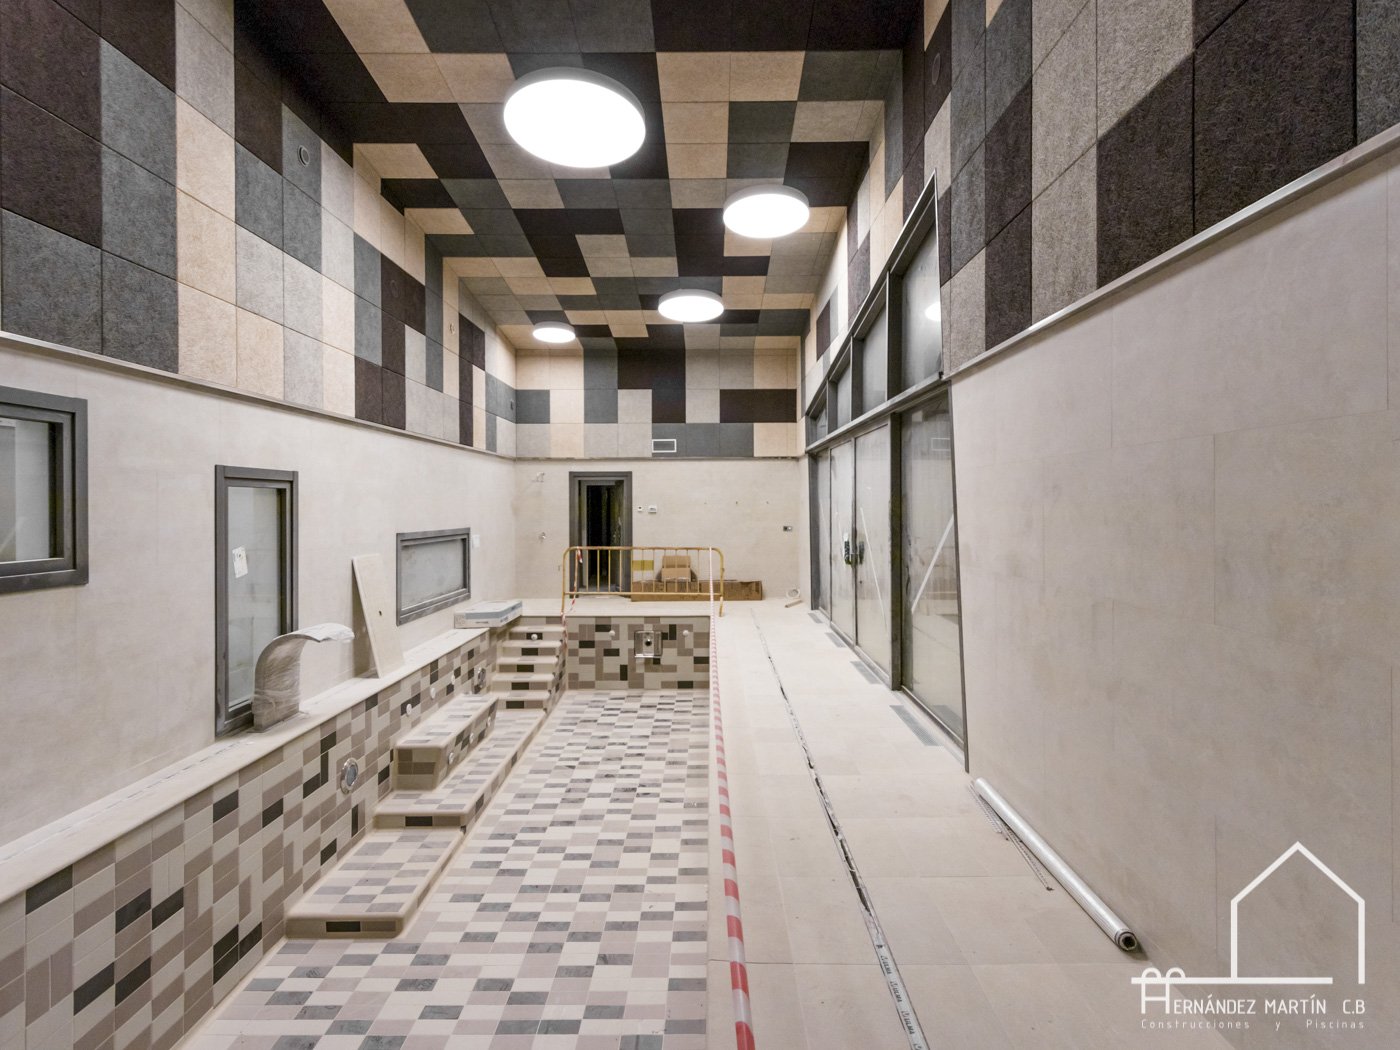 Hernandez martin construcciones y piscinas experiencia en construcción de obra nueva de vivienda y casa moderna en Zamora Salamanca y Valladolid